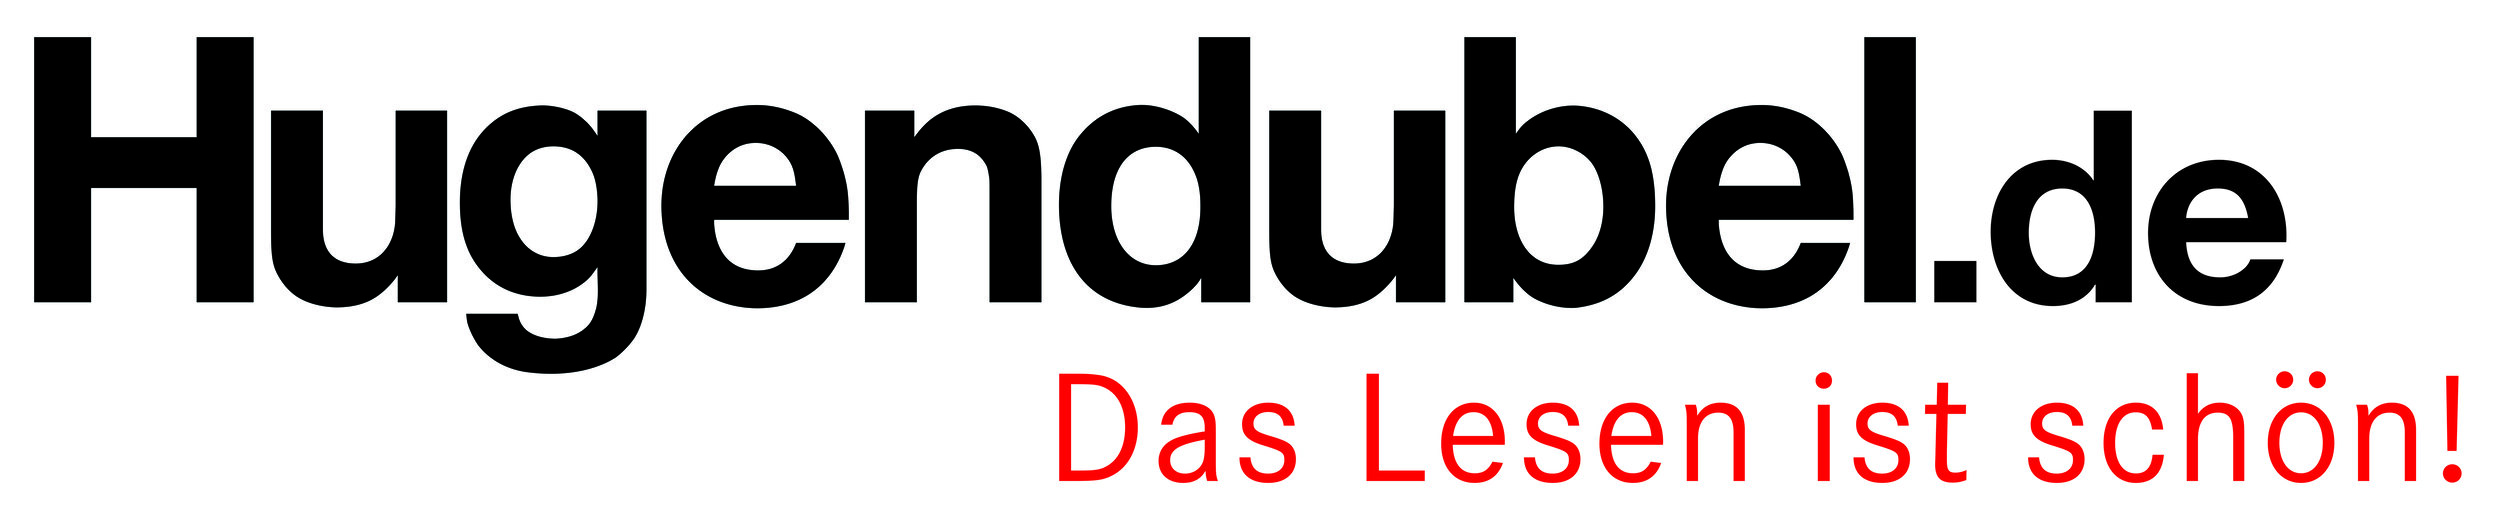 Logo_Hugendubel-de_DasLesenistschoen_RZ_4c_iscoated_V2_1002.jpg